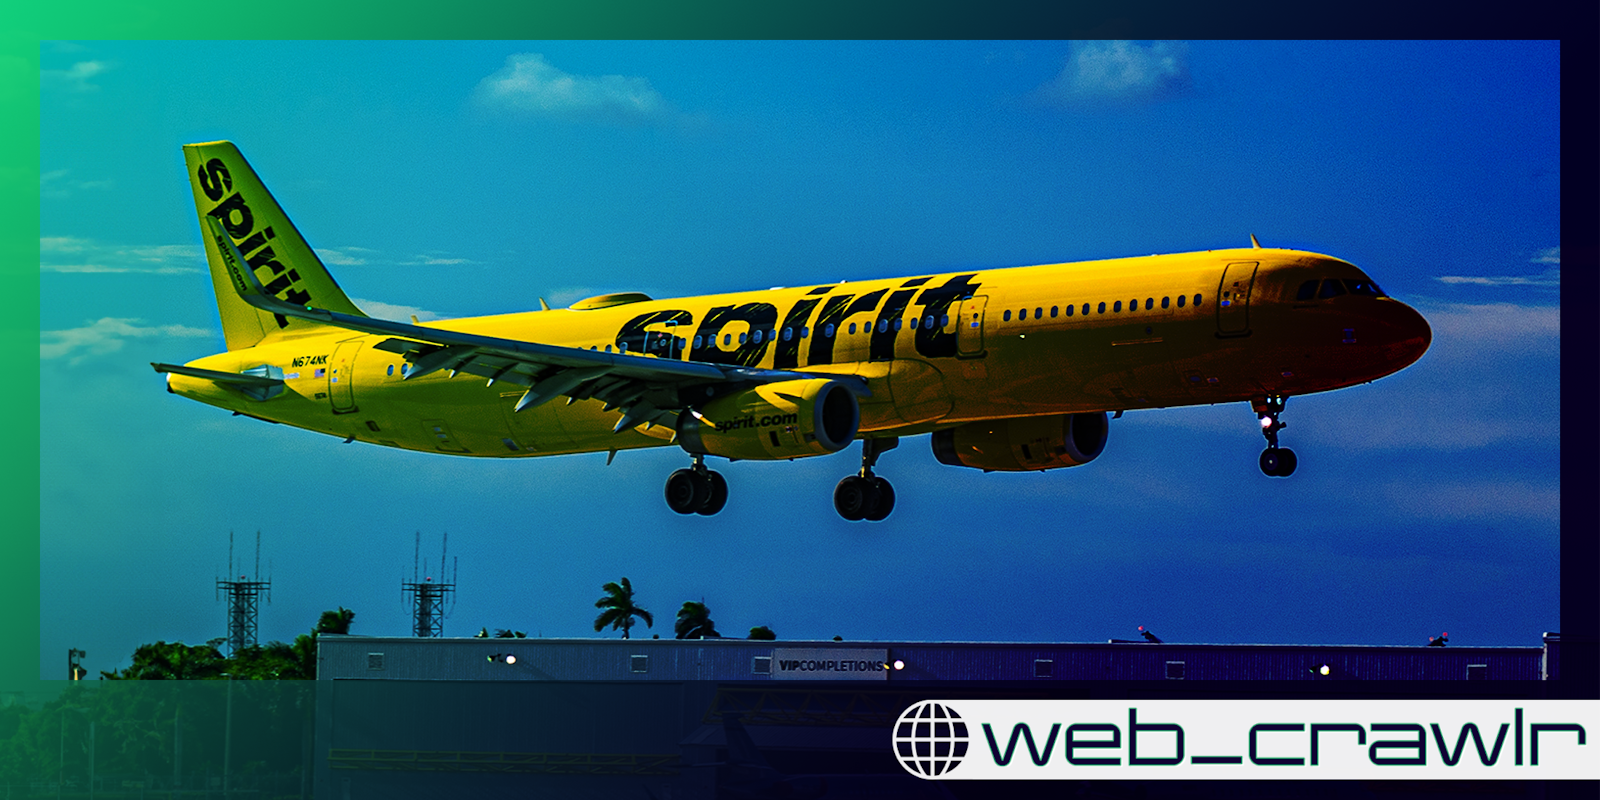 web_crawlr: Spirit Airlines worker caught swearing at traveler